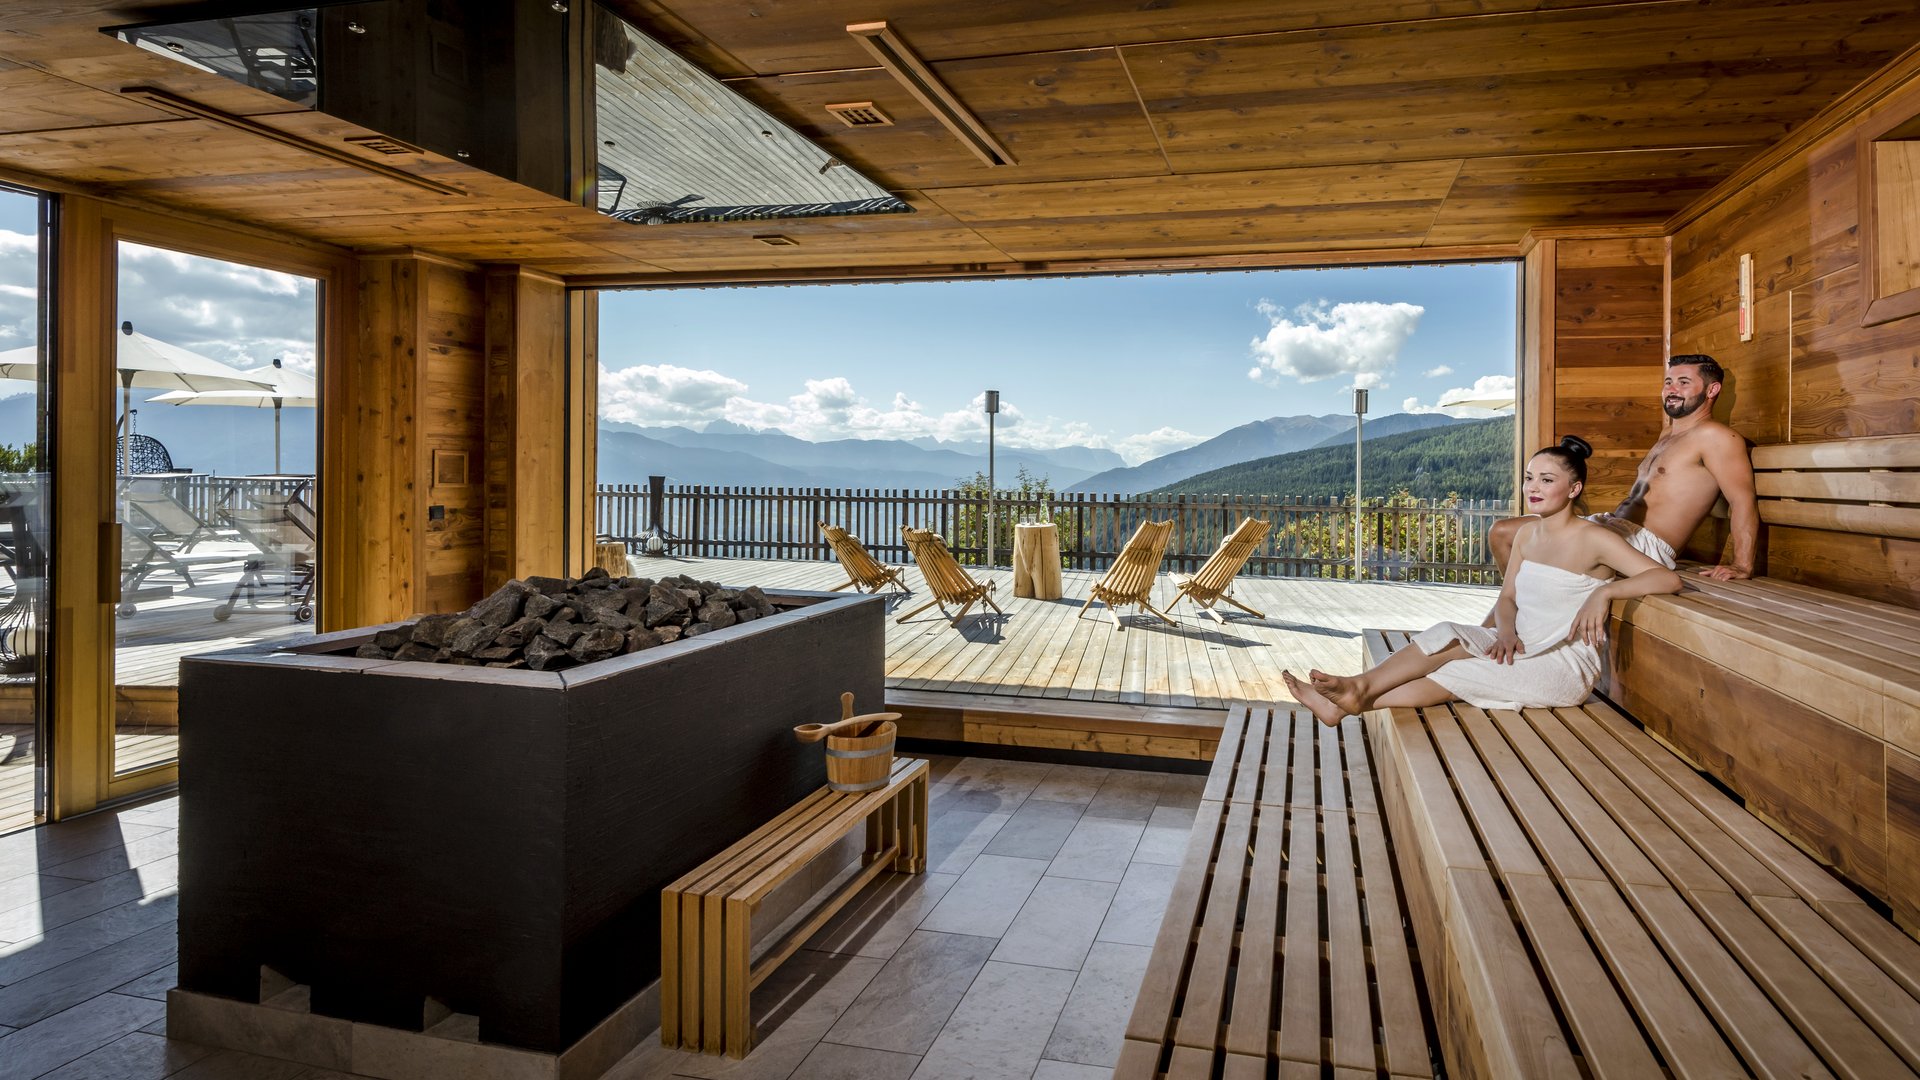 Hotel con sauna in camera in Alto Adige? Tratterhof!